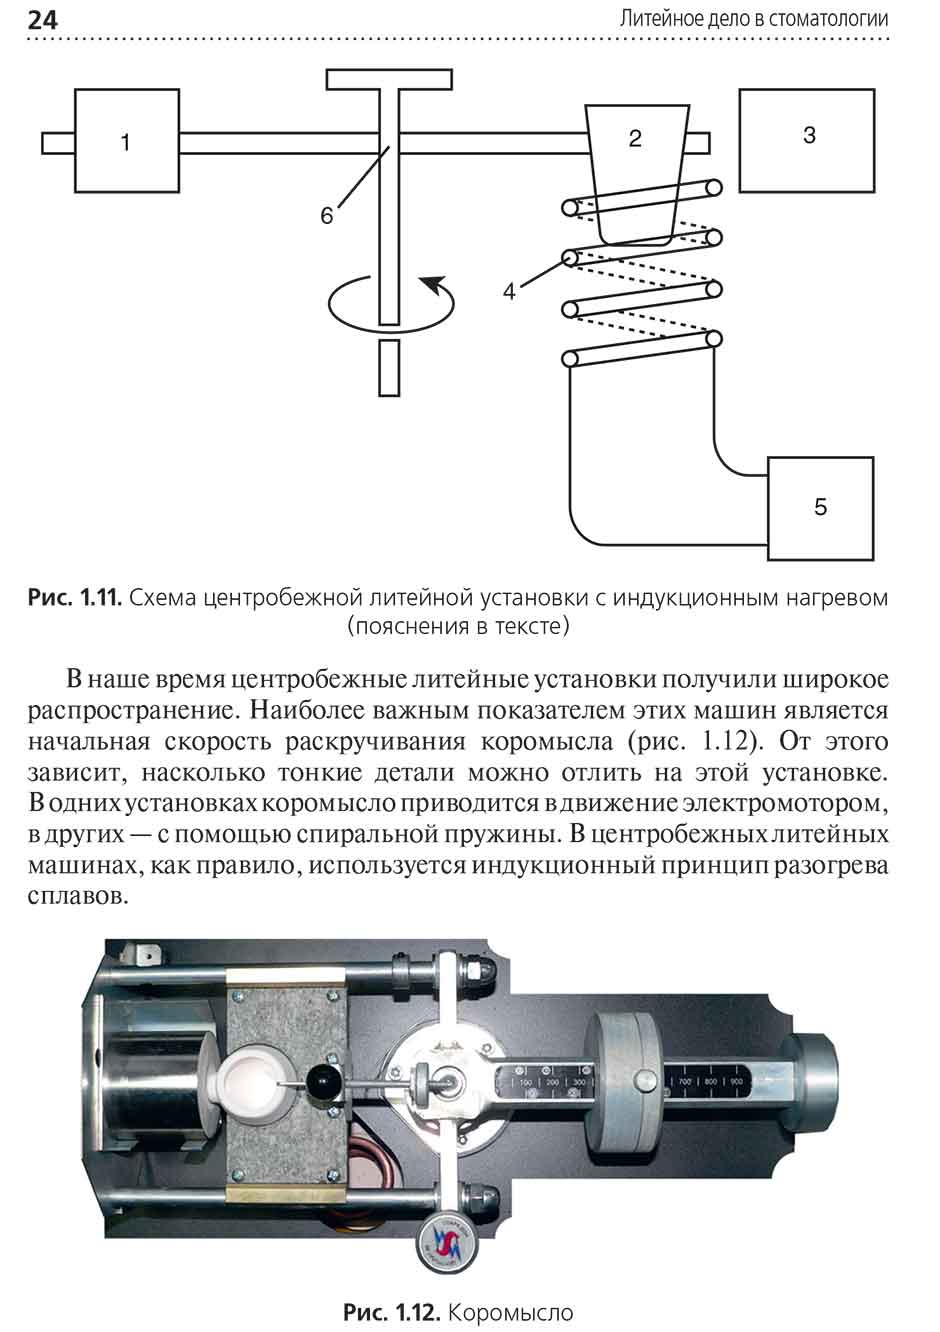 Рис. 1.11. Схема центробежной литейной установки с индукционным нагревом (пояснения в тексте)